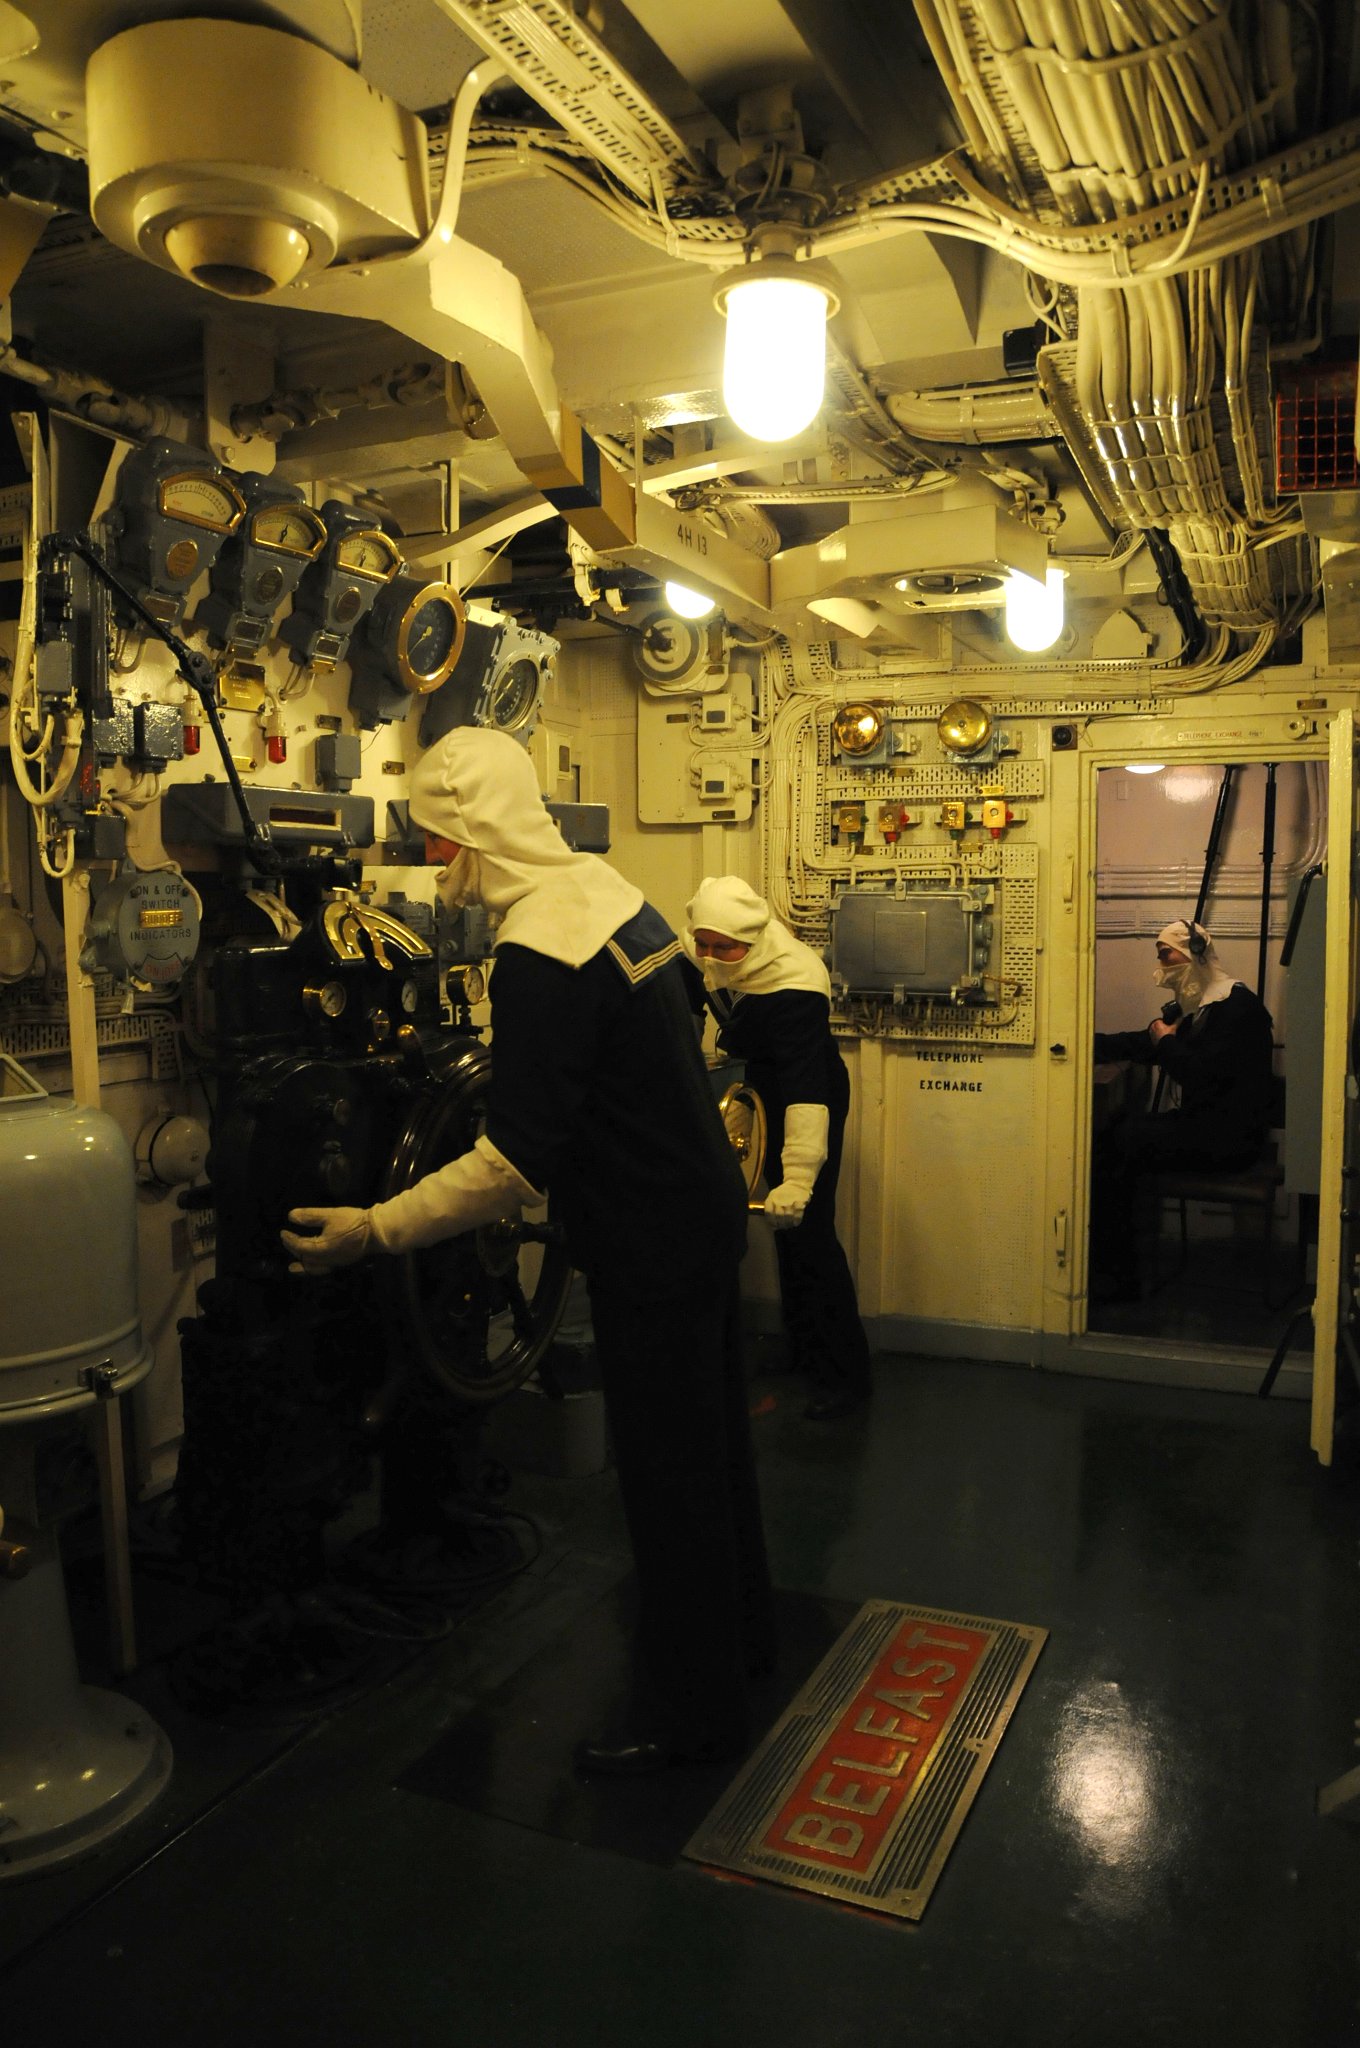 DSC_4676_1.jpg - Z toho prostoru byl HMS Befast řízen. Protor se nachází tři paluby dole a je chráněn vyšším obrněním. Kormidelník obdržel pokyny od důstojníka sedící v této místnosti (Officer of the Watch on the Compass Platform). Na druhé straně je pak lodní telefonní ústředna.